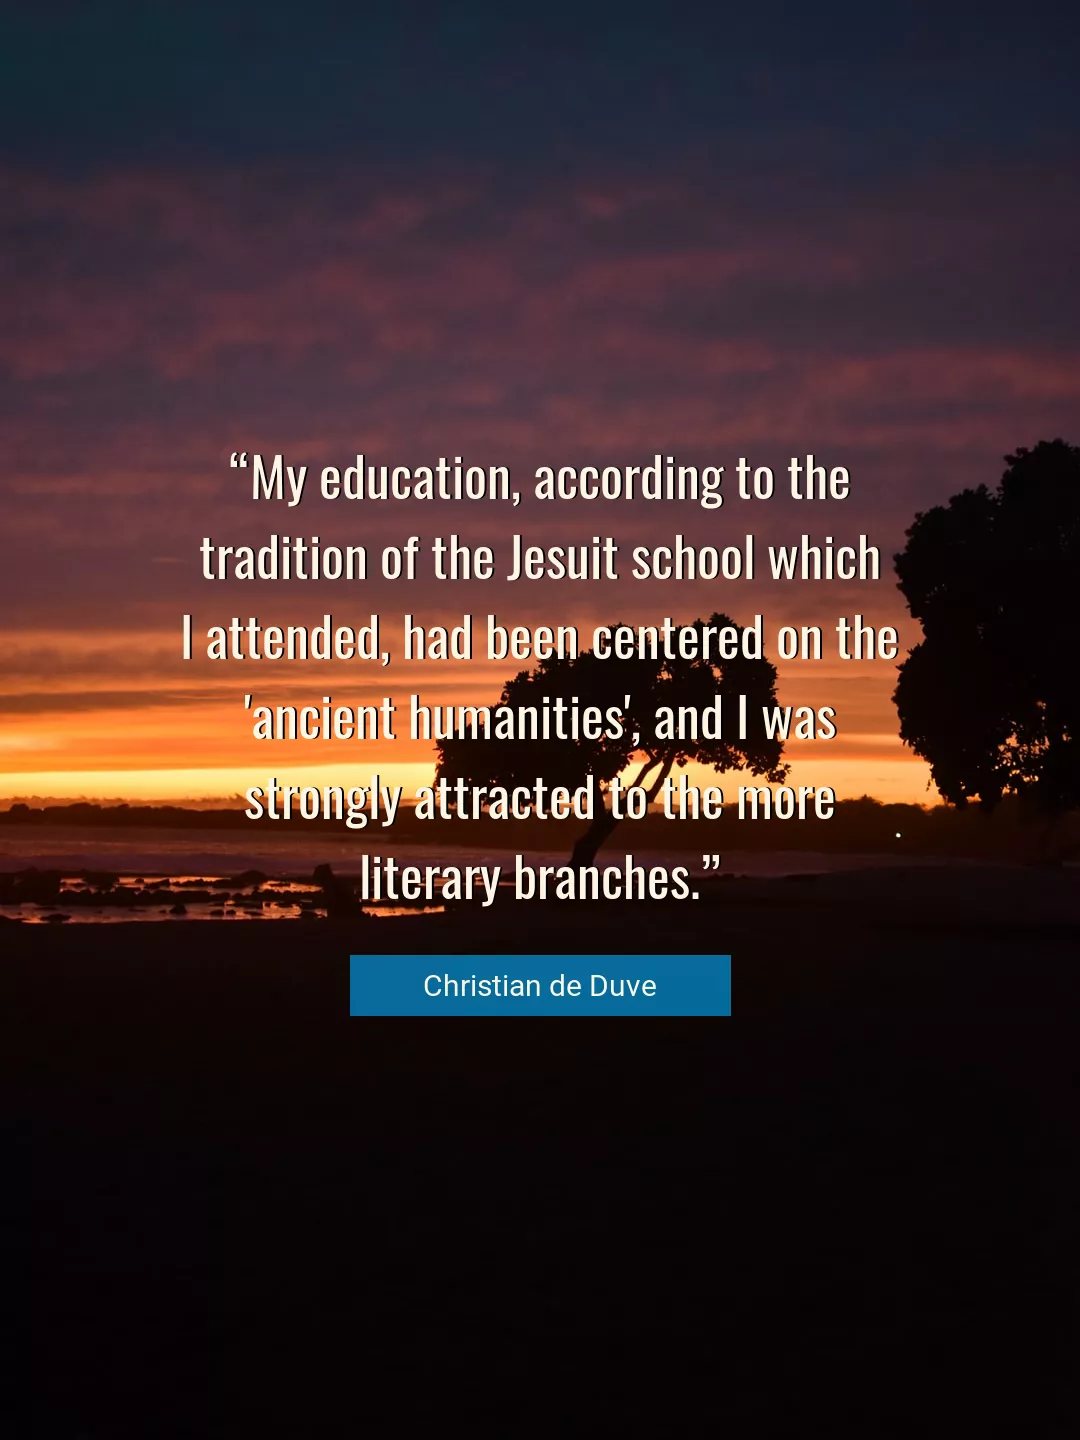 Quote About Education By Christian de Duve